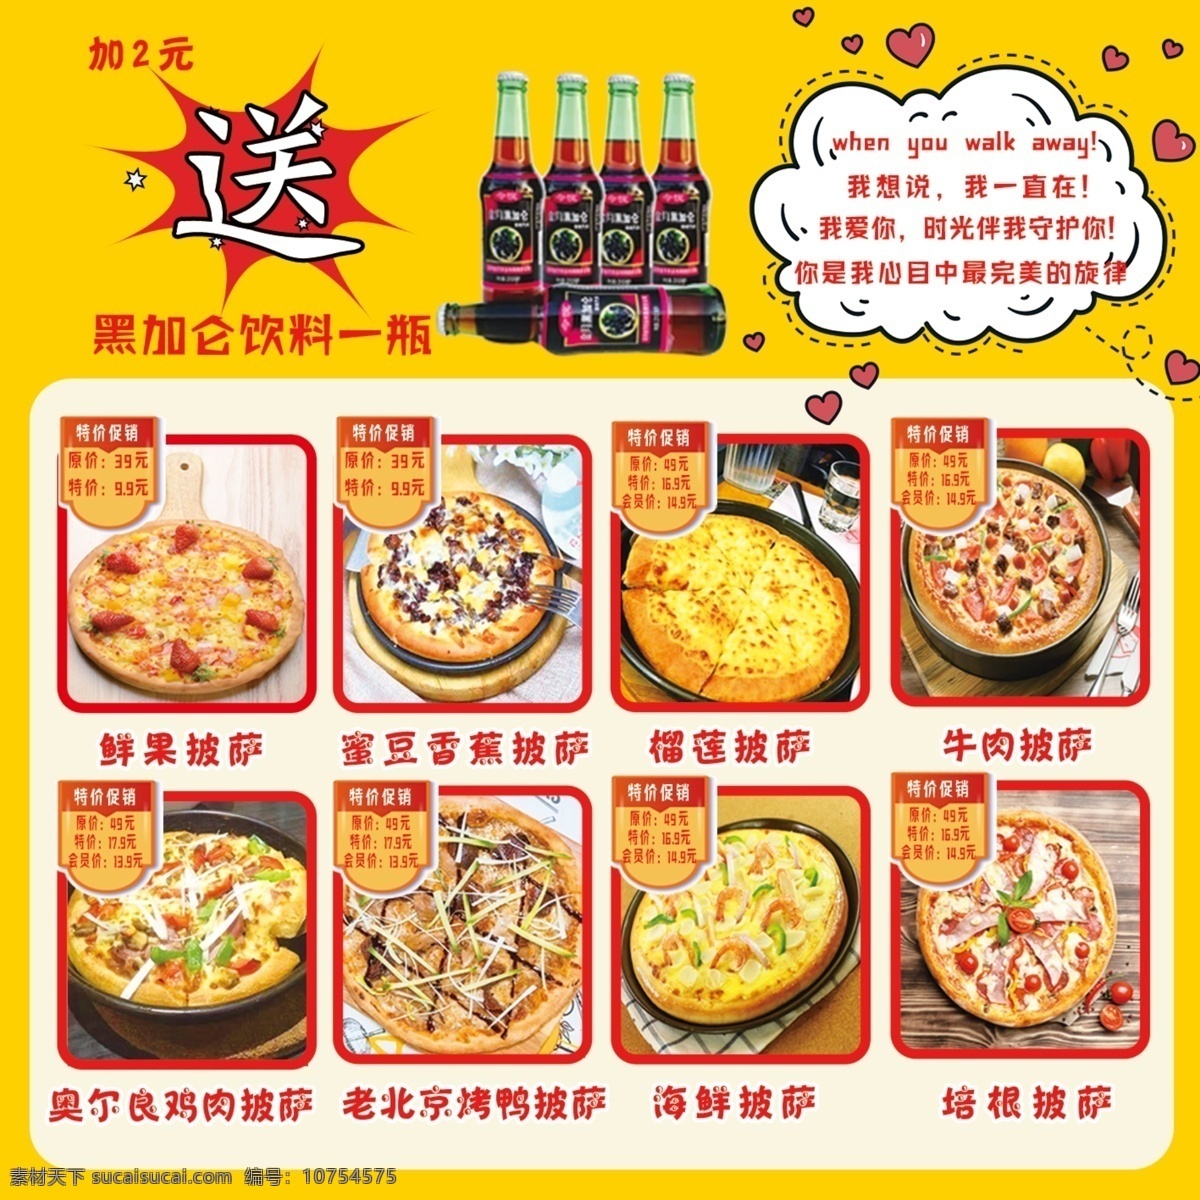 披萨 比萨 披萨平铺 披萨摆设 披萨制作 披萨海报 披萨展板 比萨灯箱